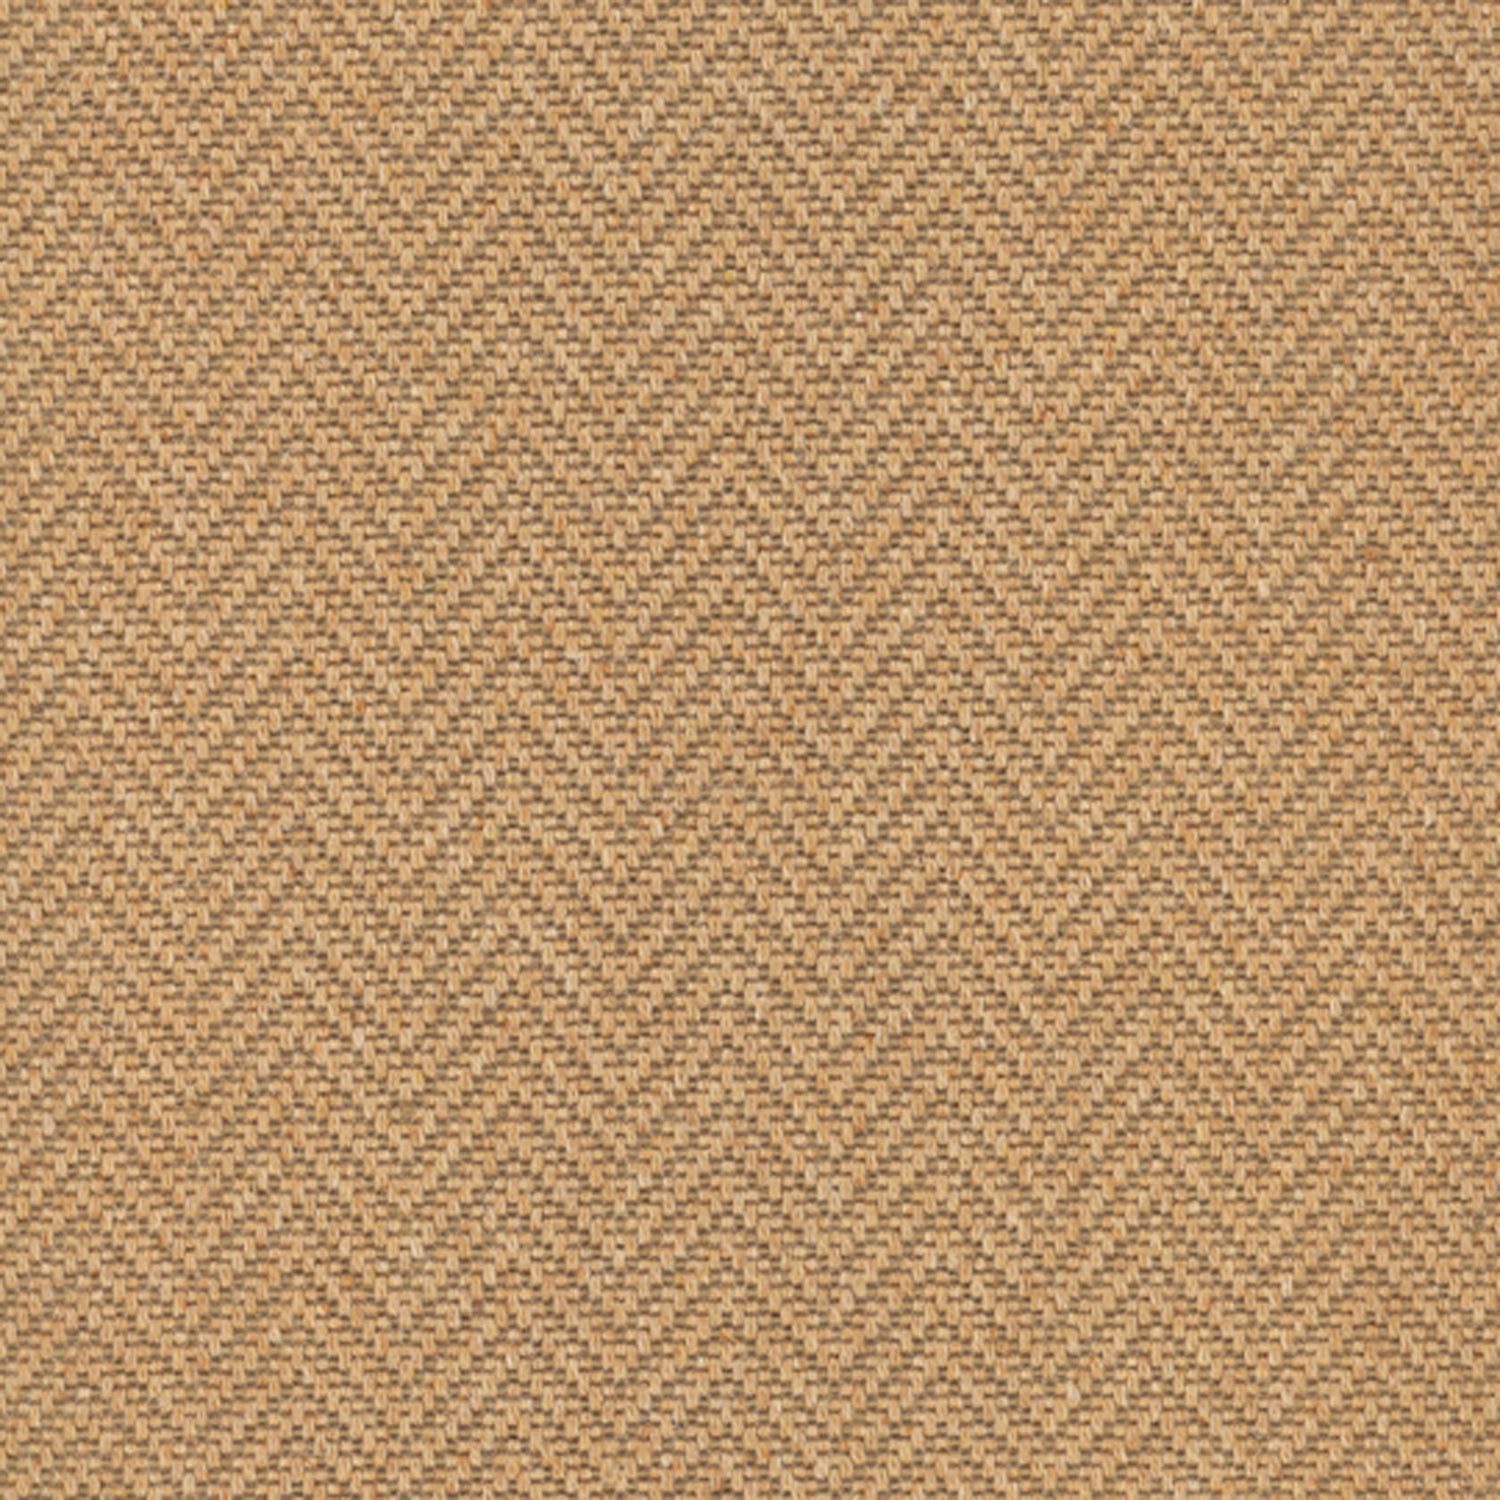 Wool broadloom carpet swatch in a herringbone weave in bronze and brown.